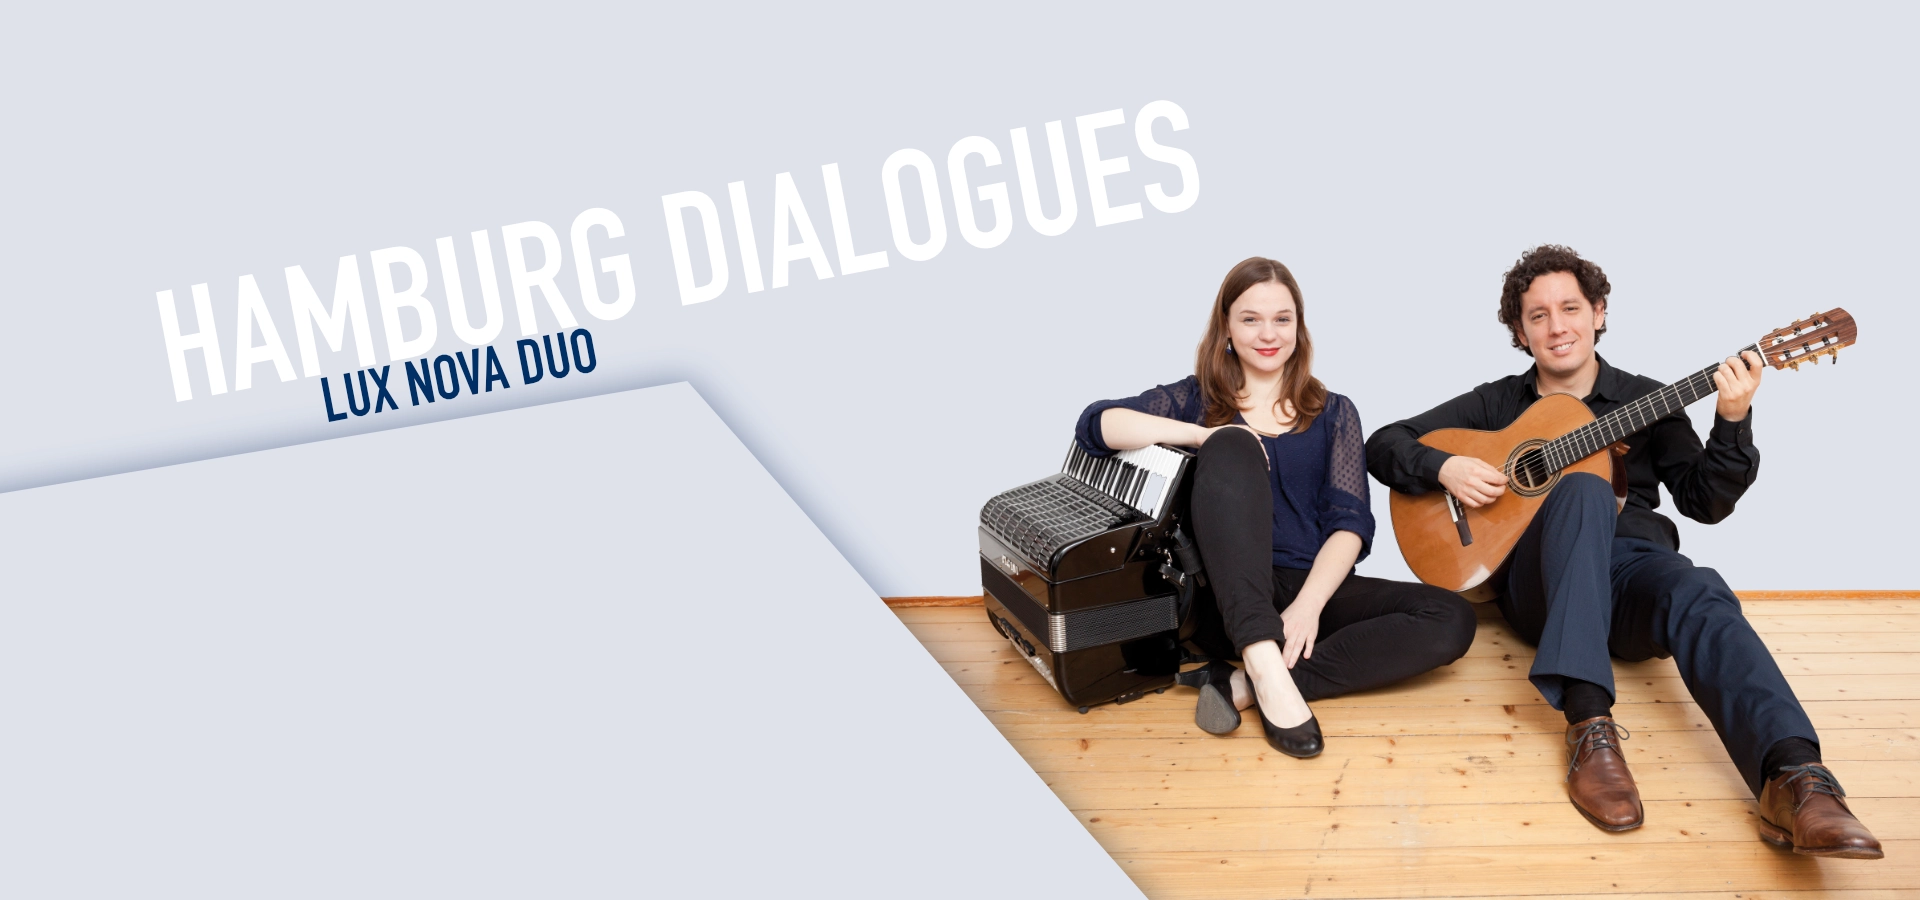 Artwork „Hamburg Dialogues“ Lux Nova Duo